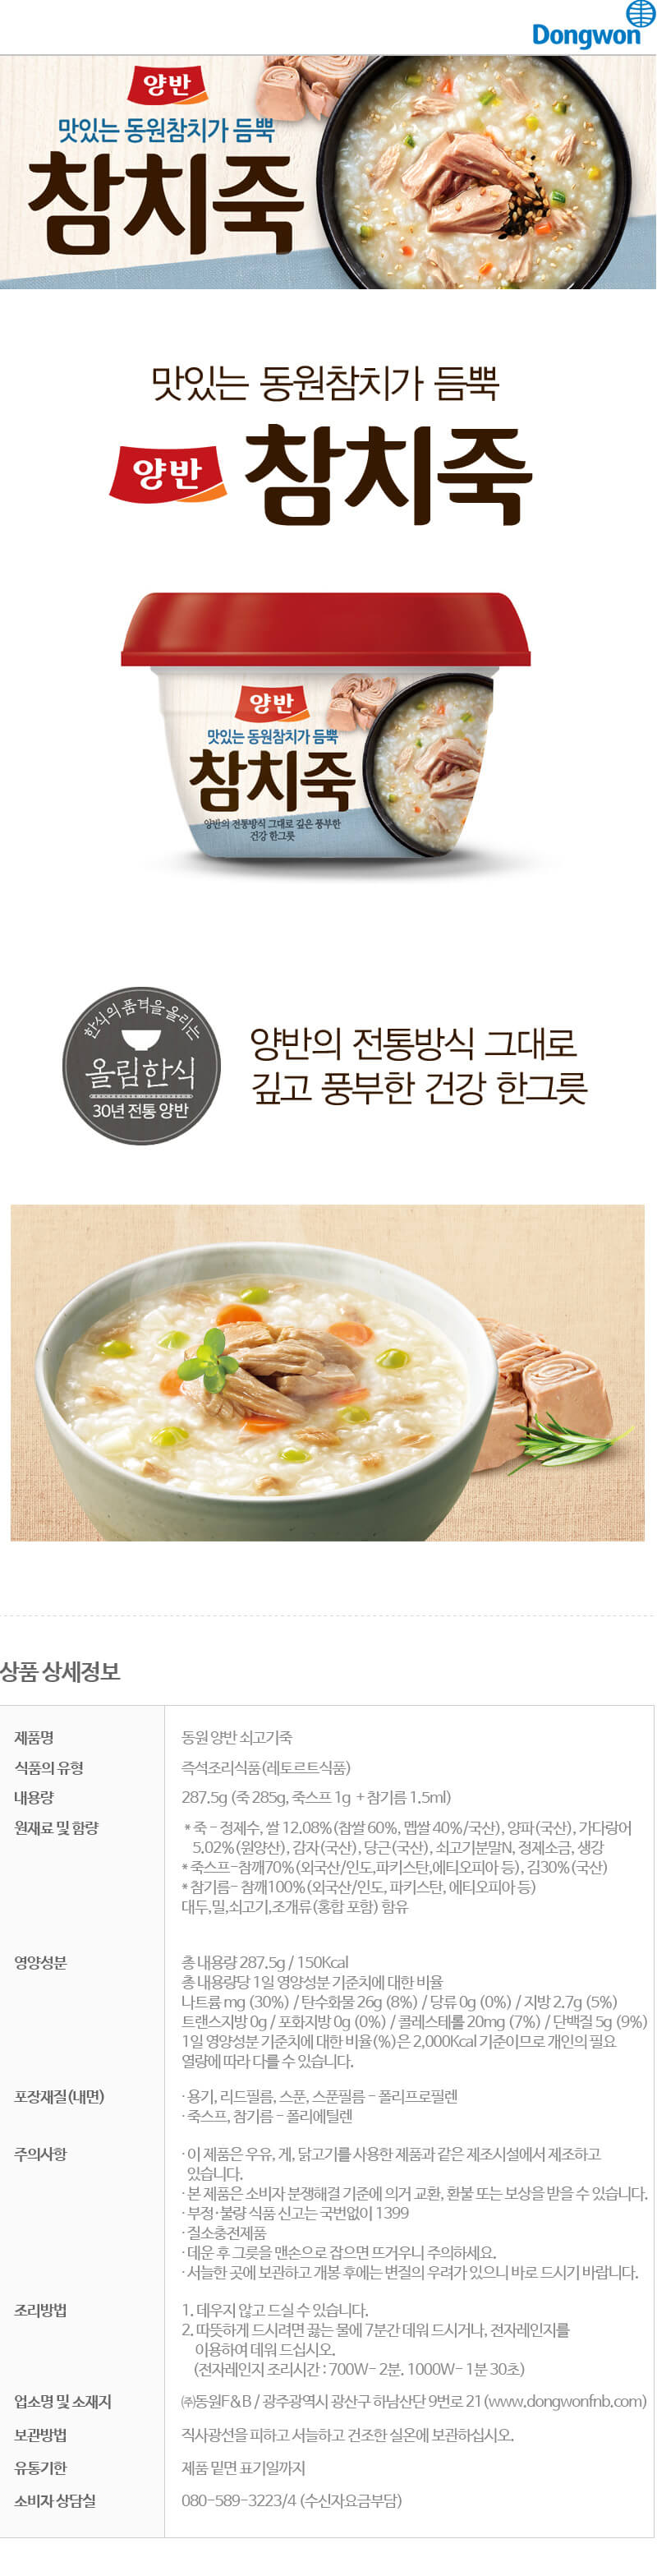 韓國食品-[東遠] 兩班 吞拿魚粥 287.5g